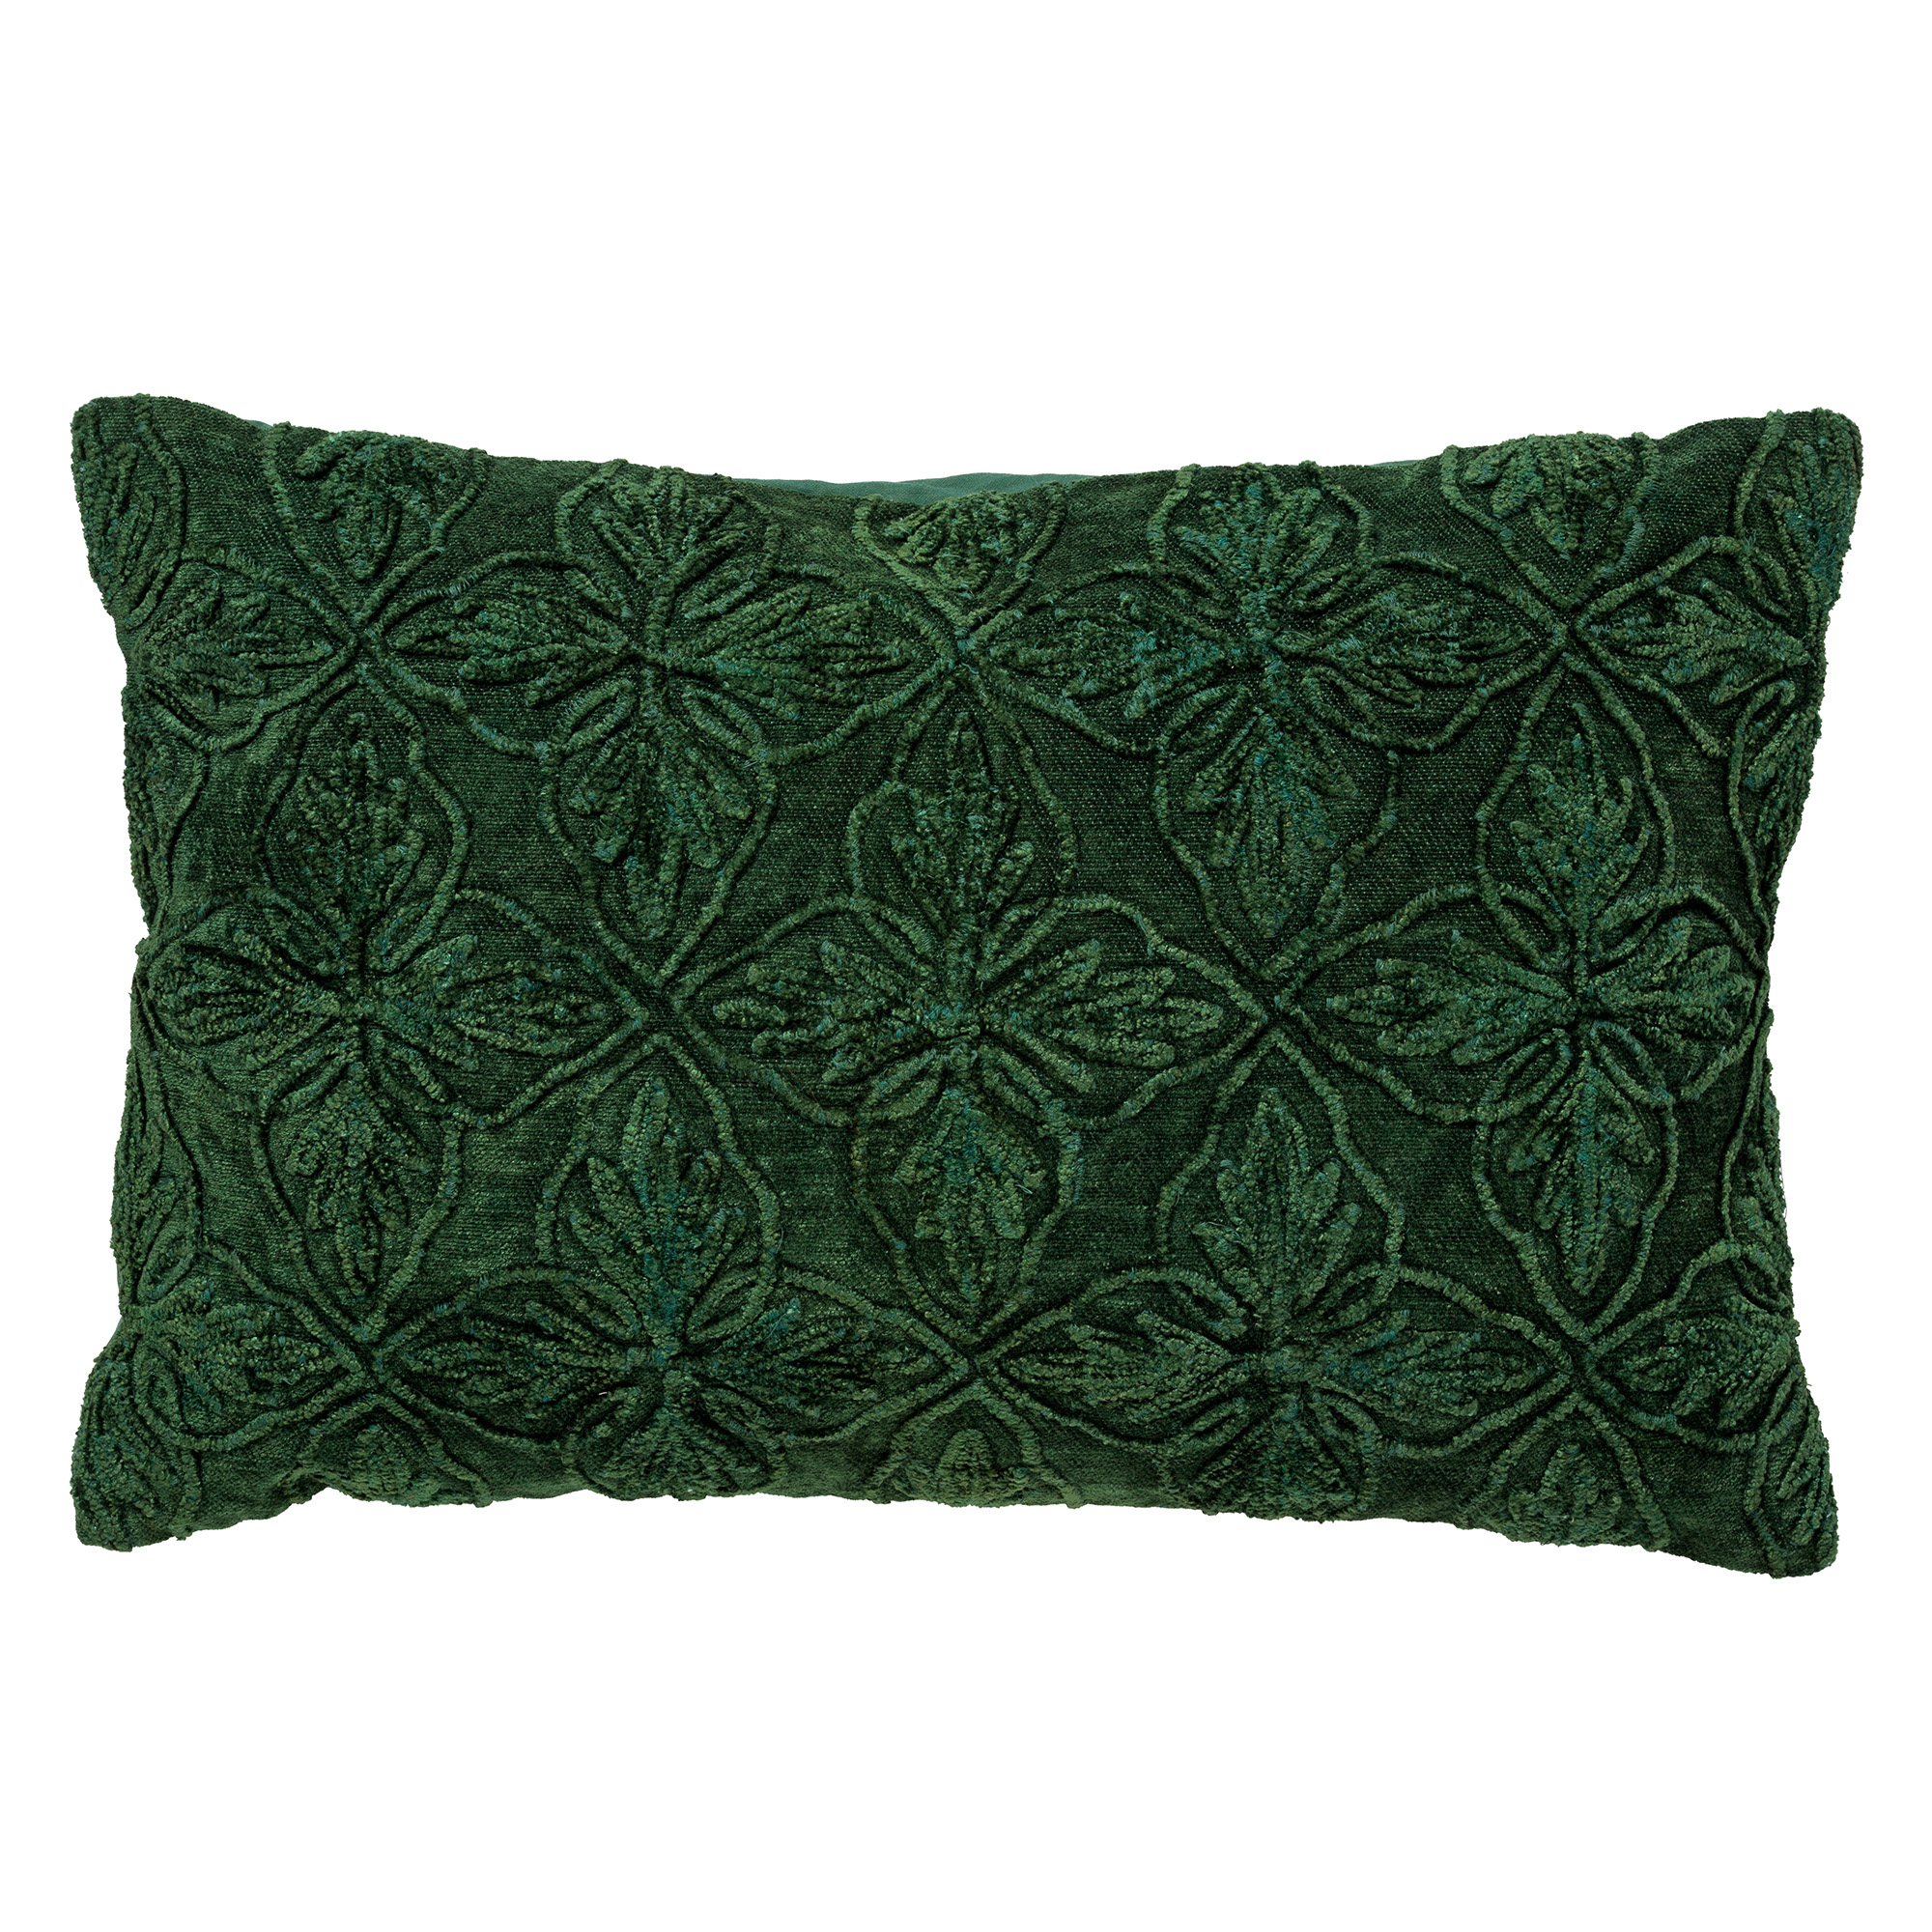 AMAR - Cushion cover cotton 40x60 cm Mountain View